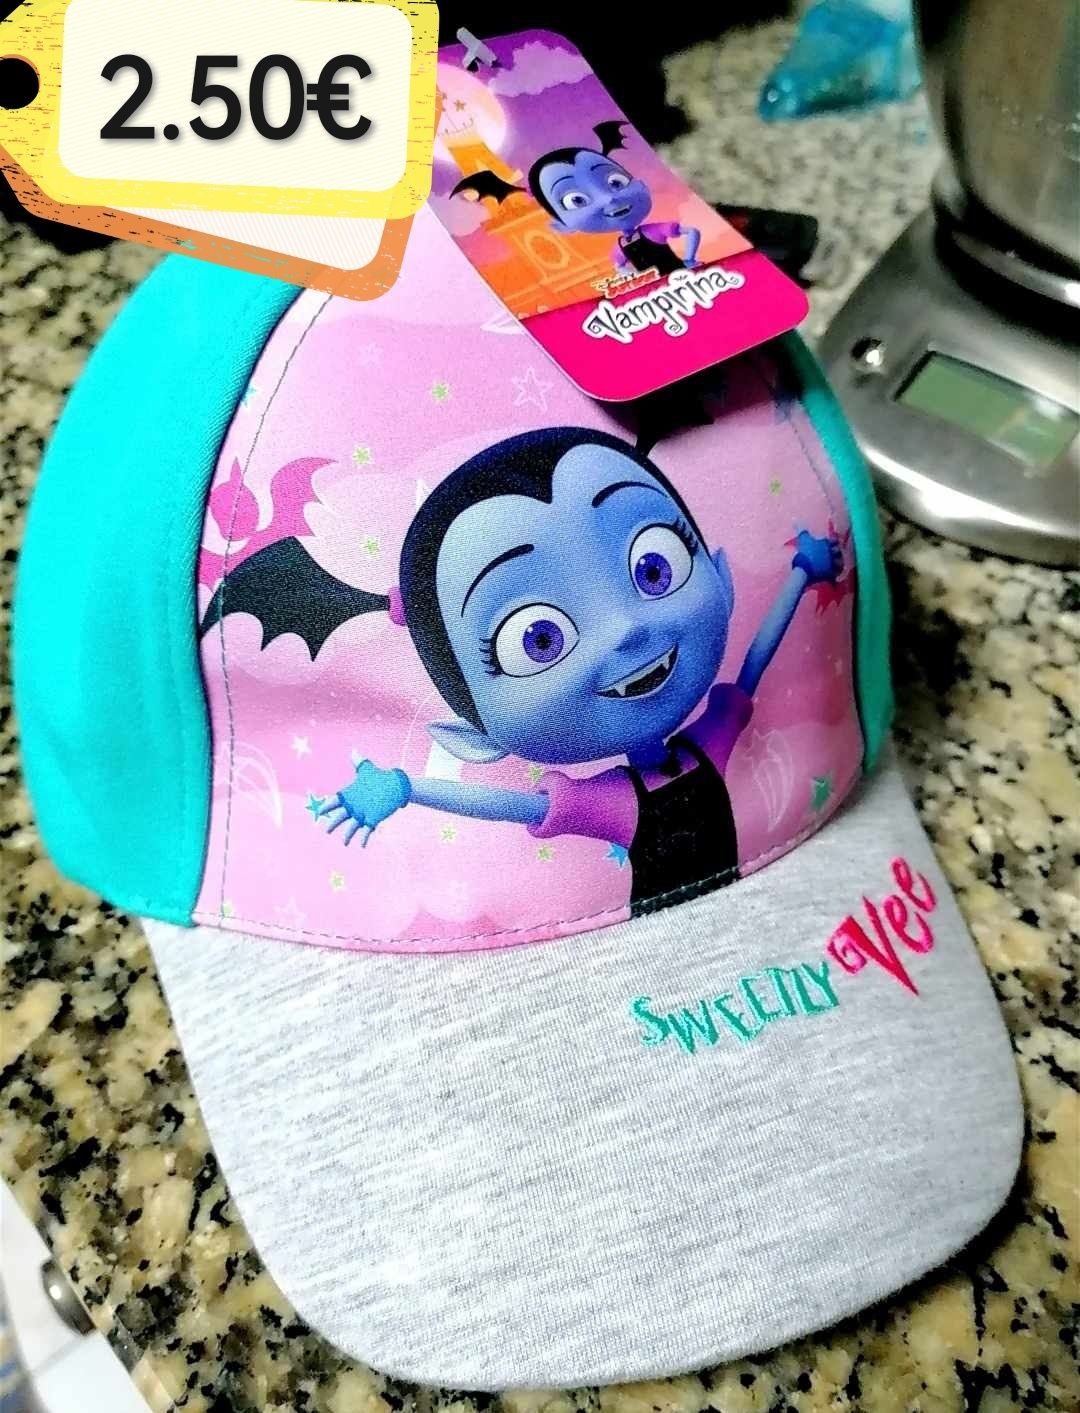 Chapéu de Criança "VAMPIRINA Disney" (Novo com etiqueta)